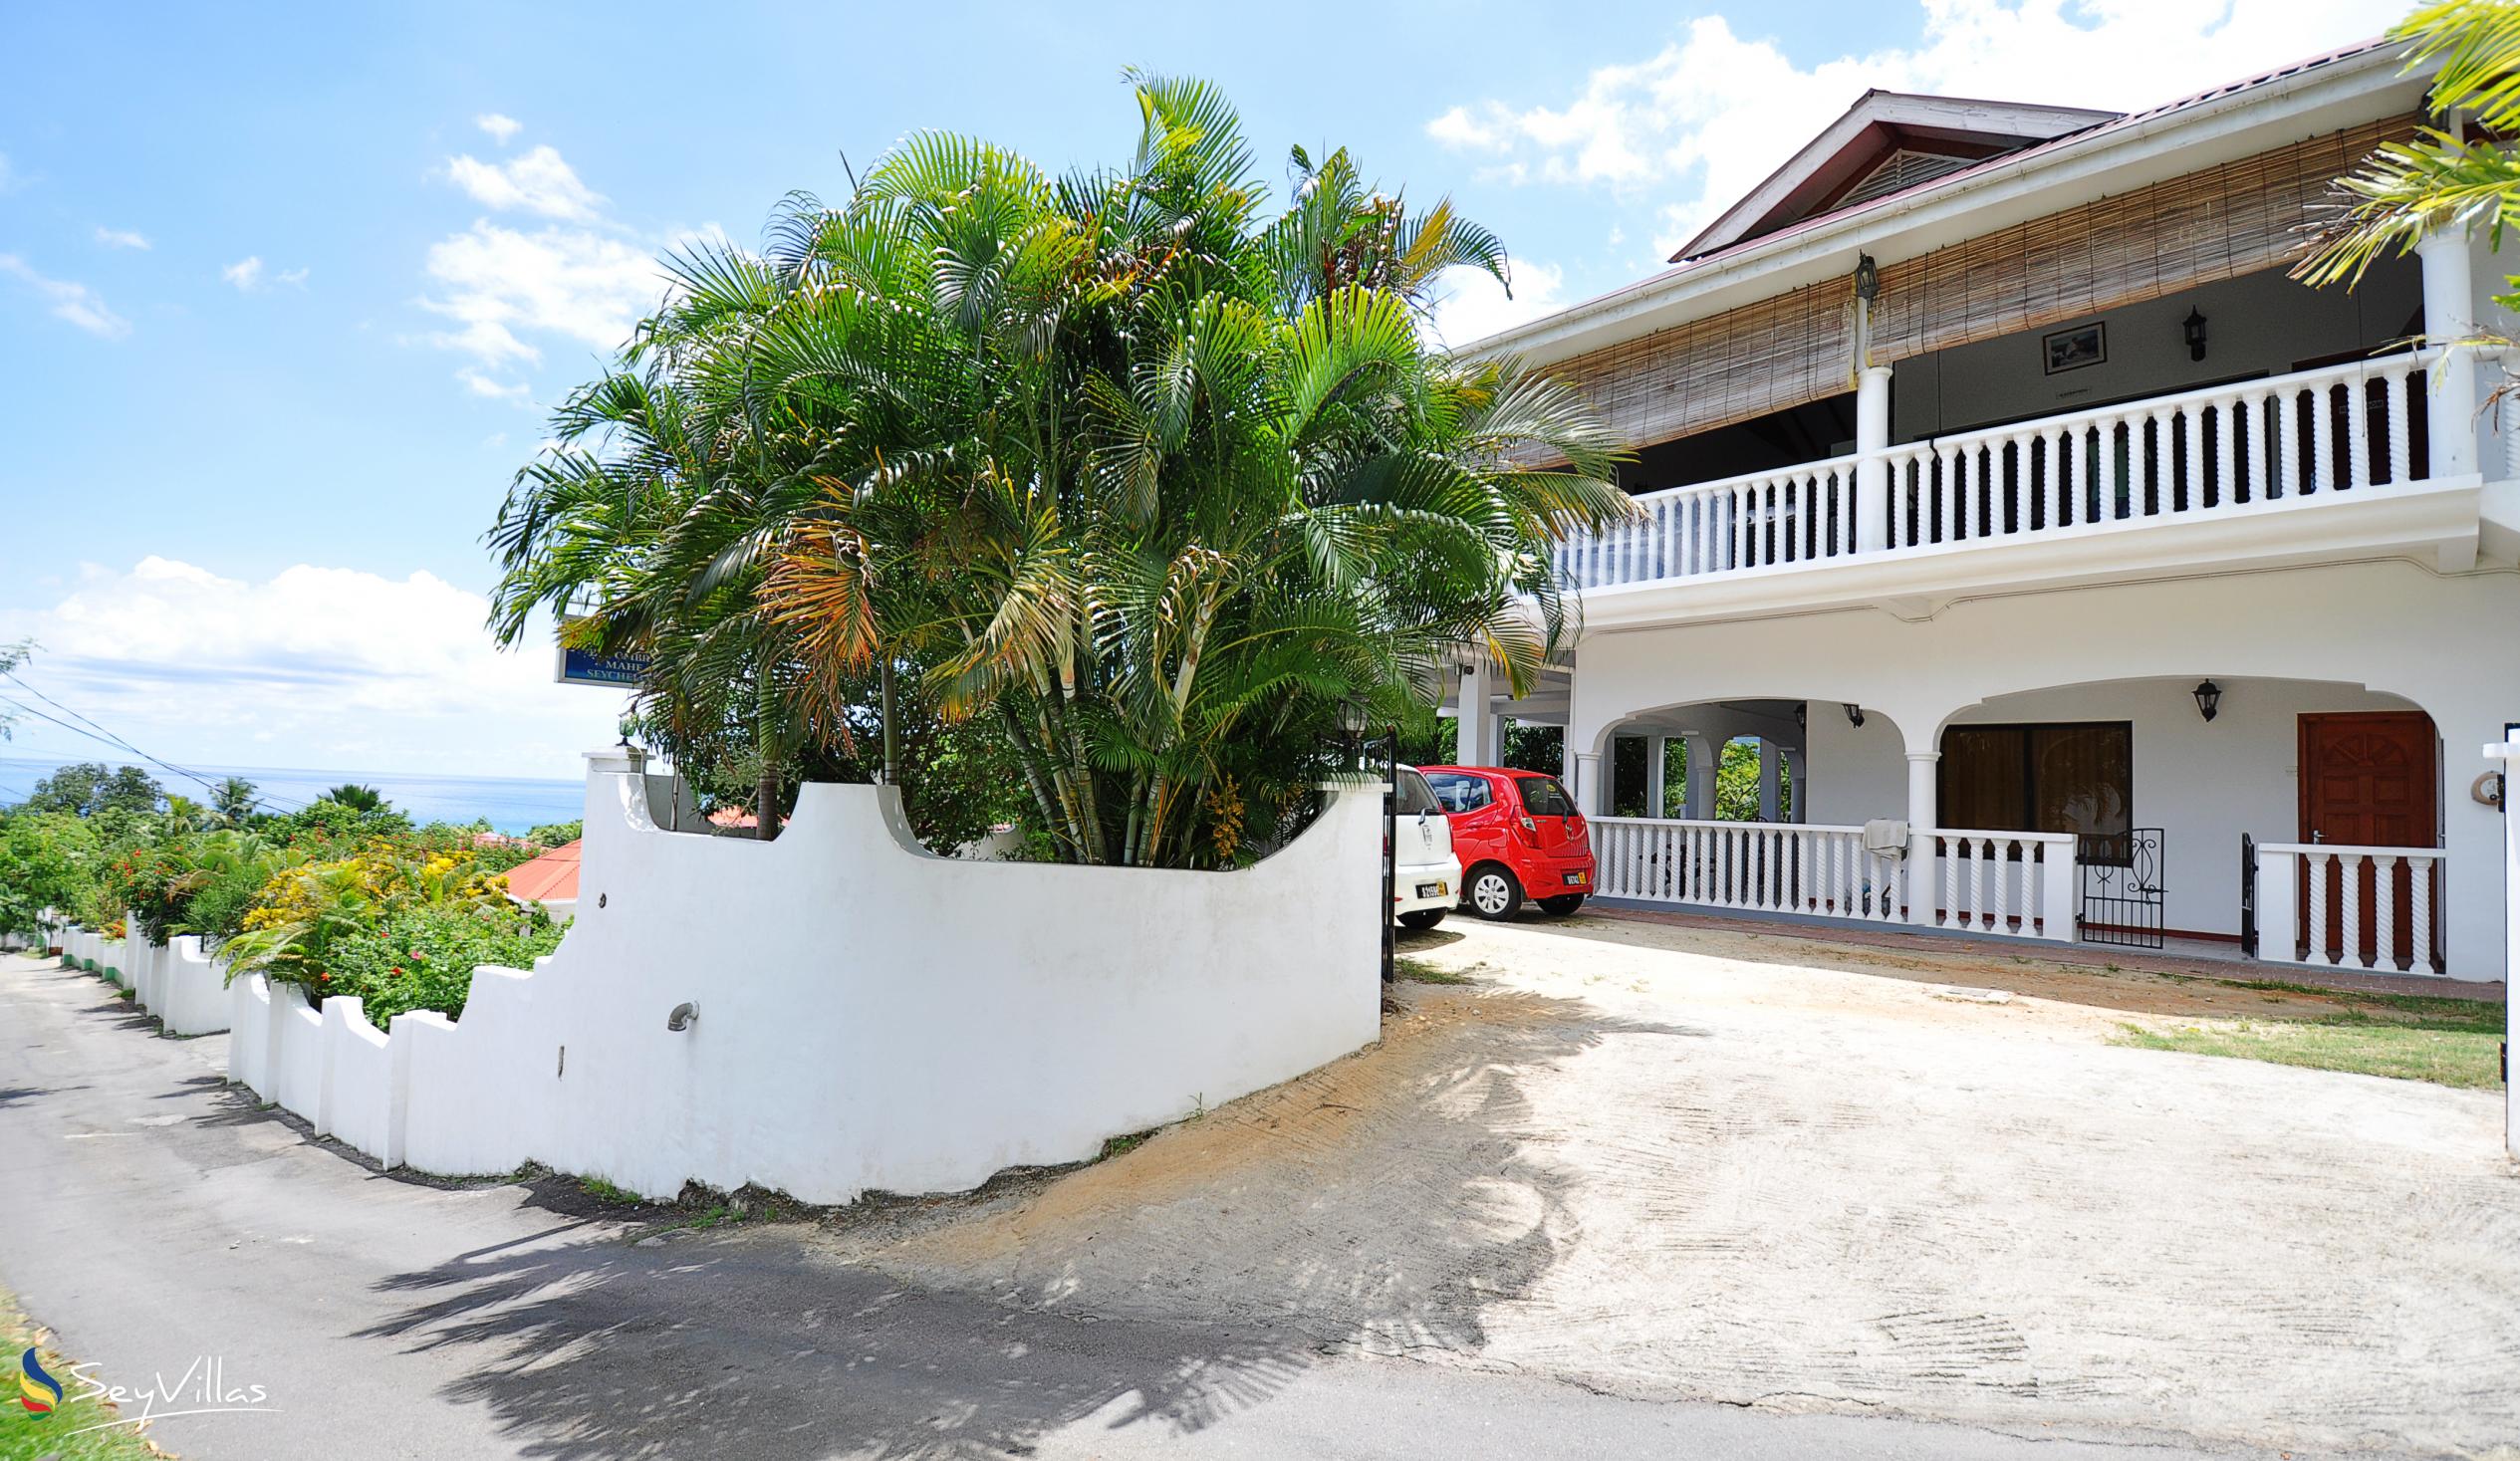 Foto 6: Casadani - Aussenbereich - Mahé (Seychellen)